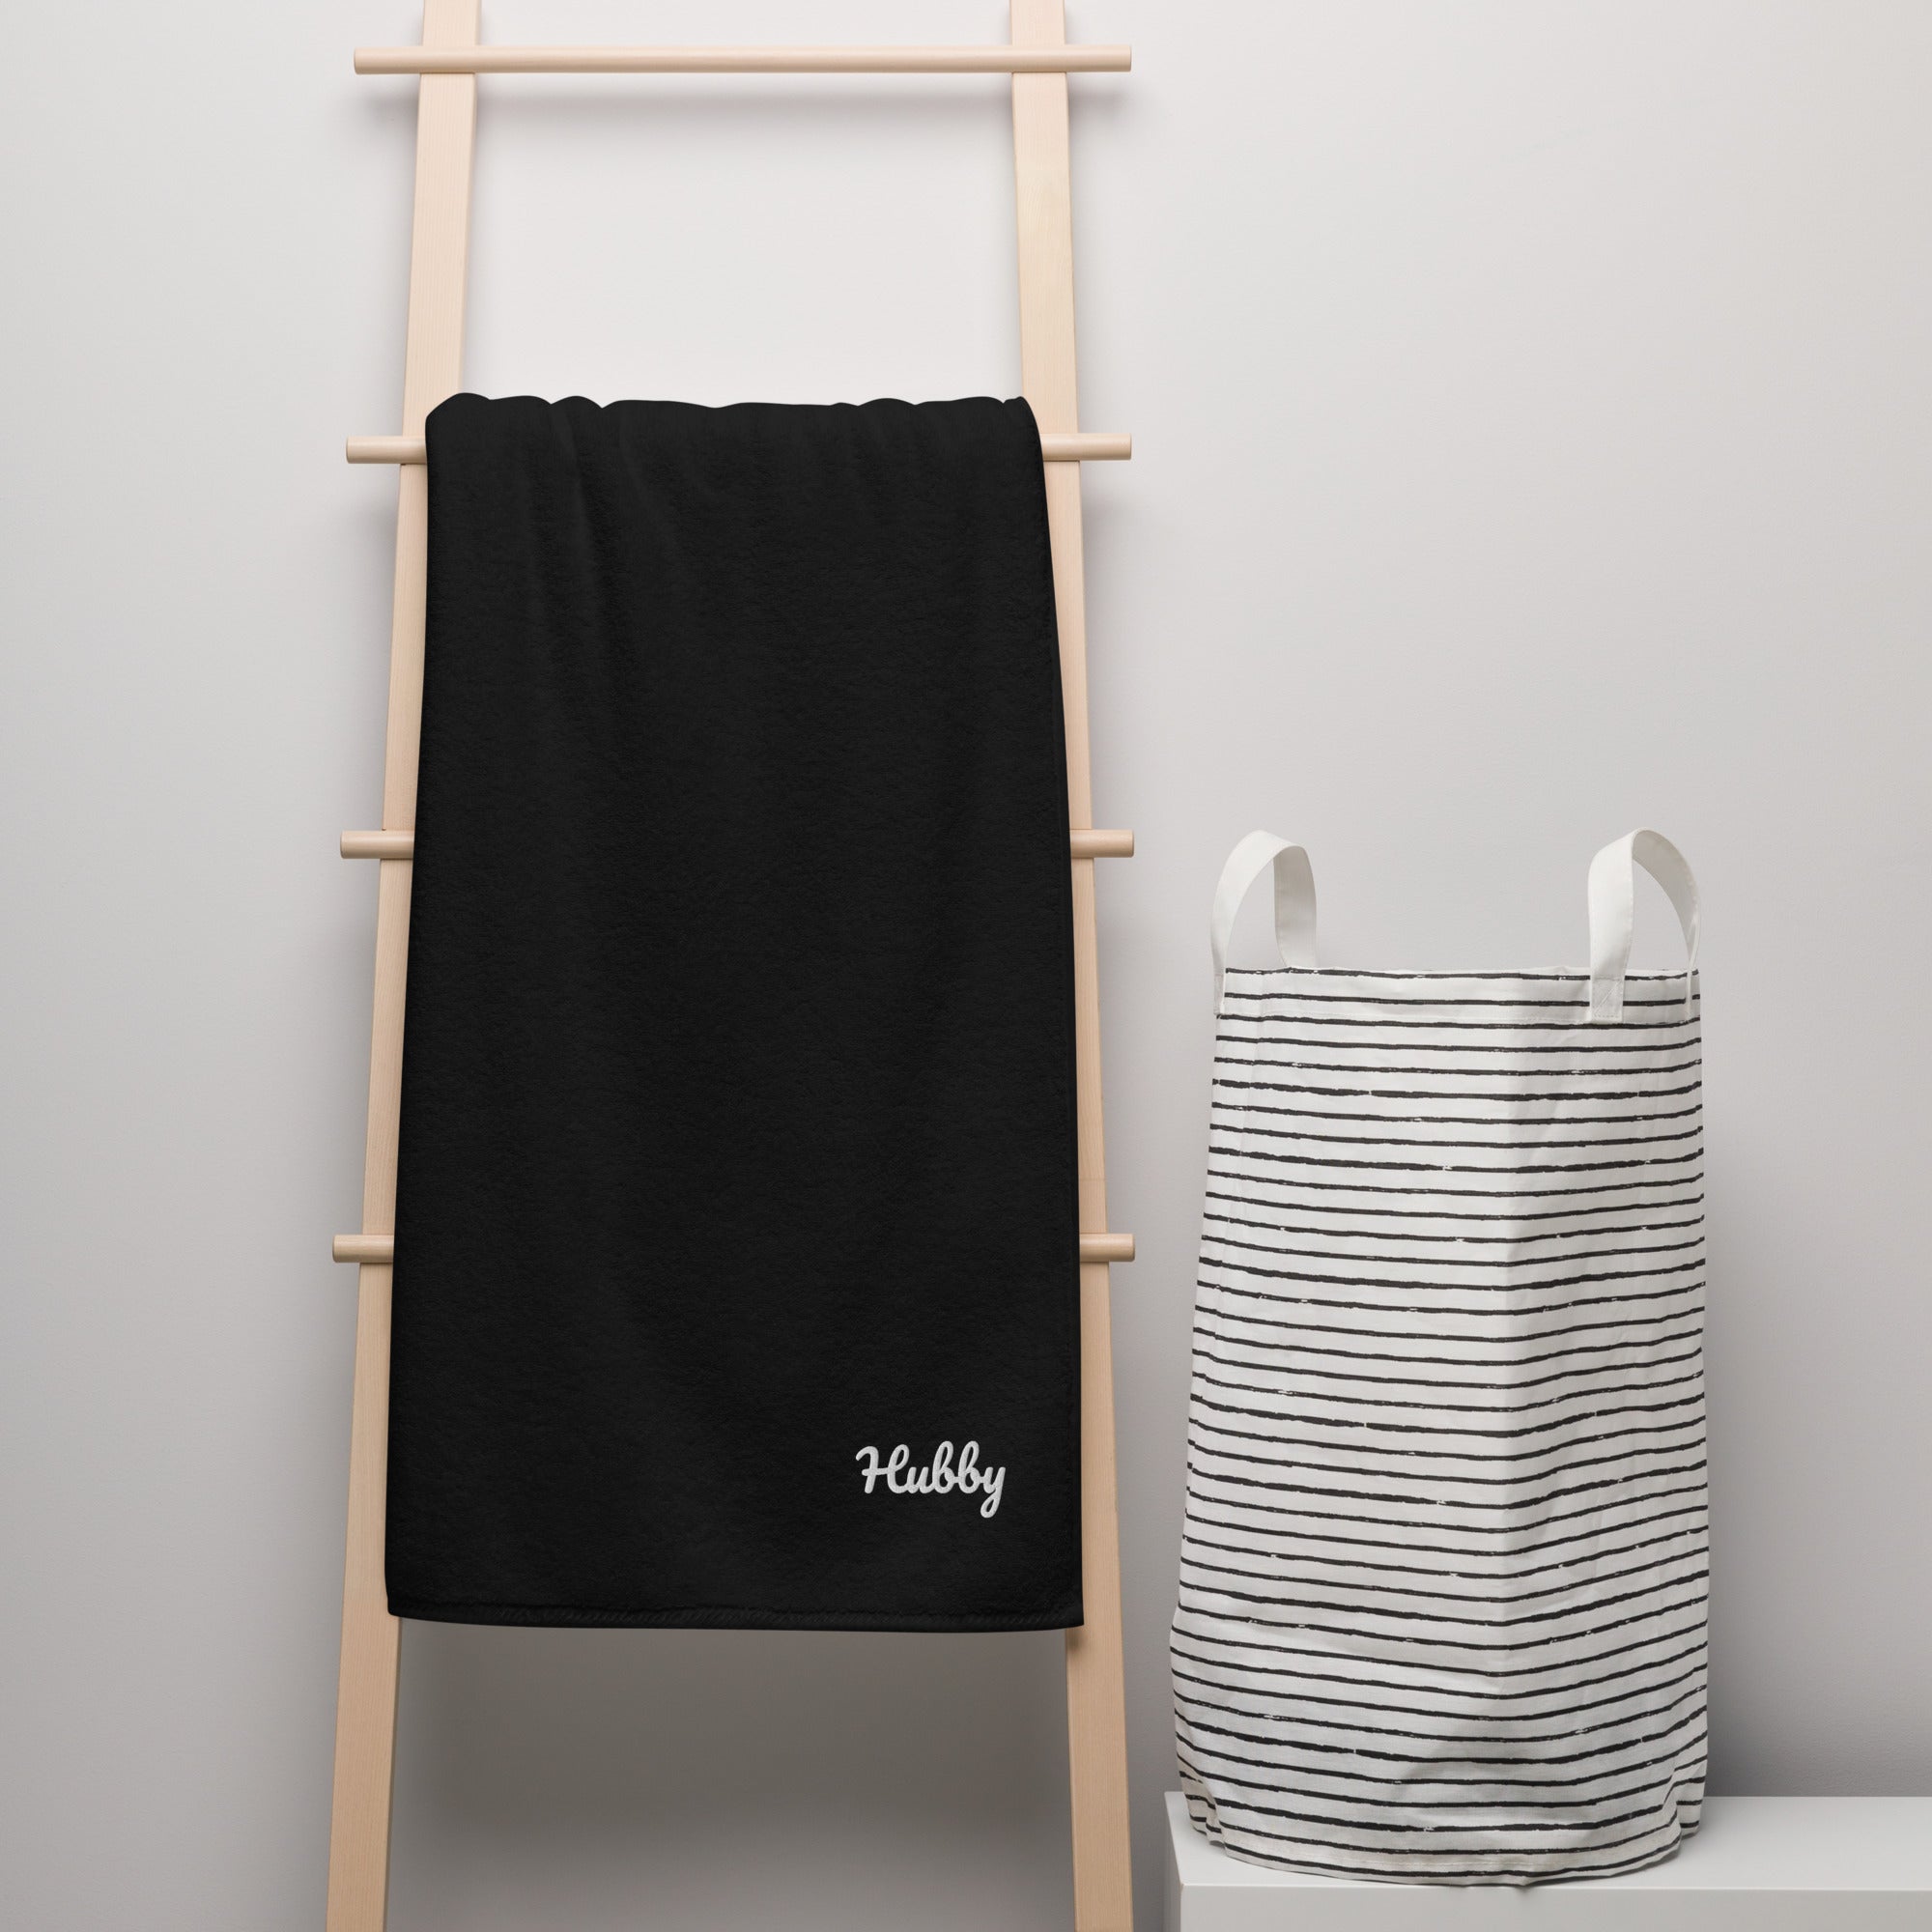 Hubby & Wifey Cotton Bath Towel Gift Set (Hubby)